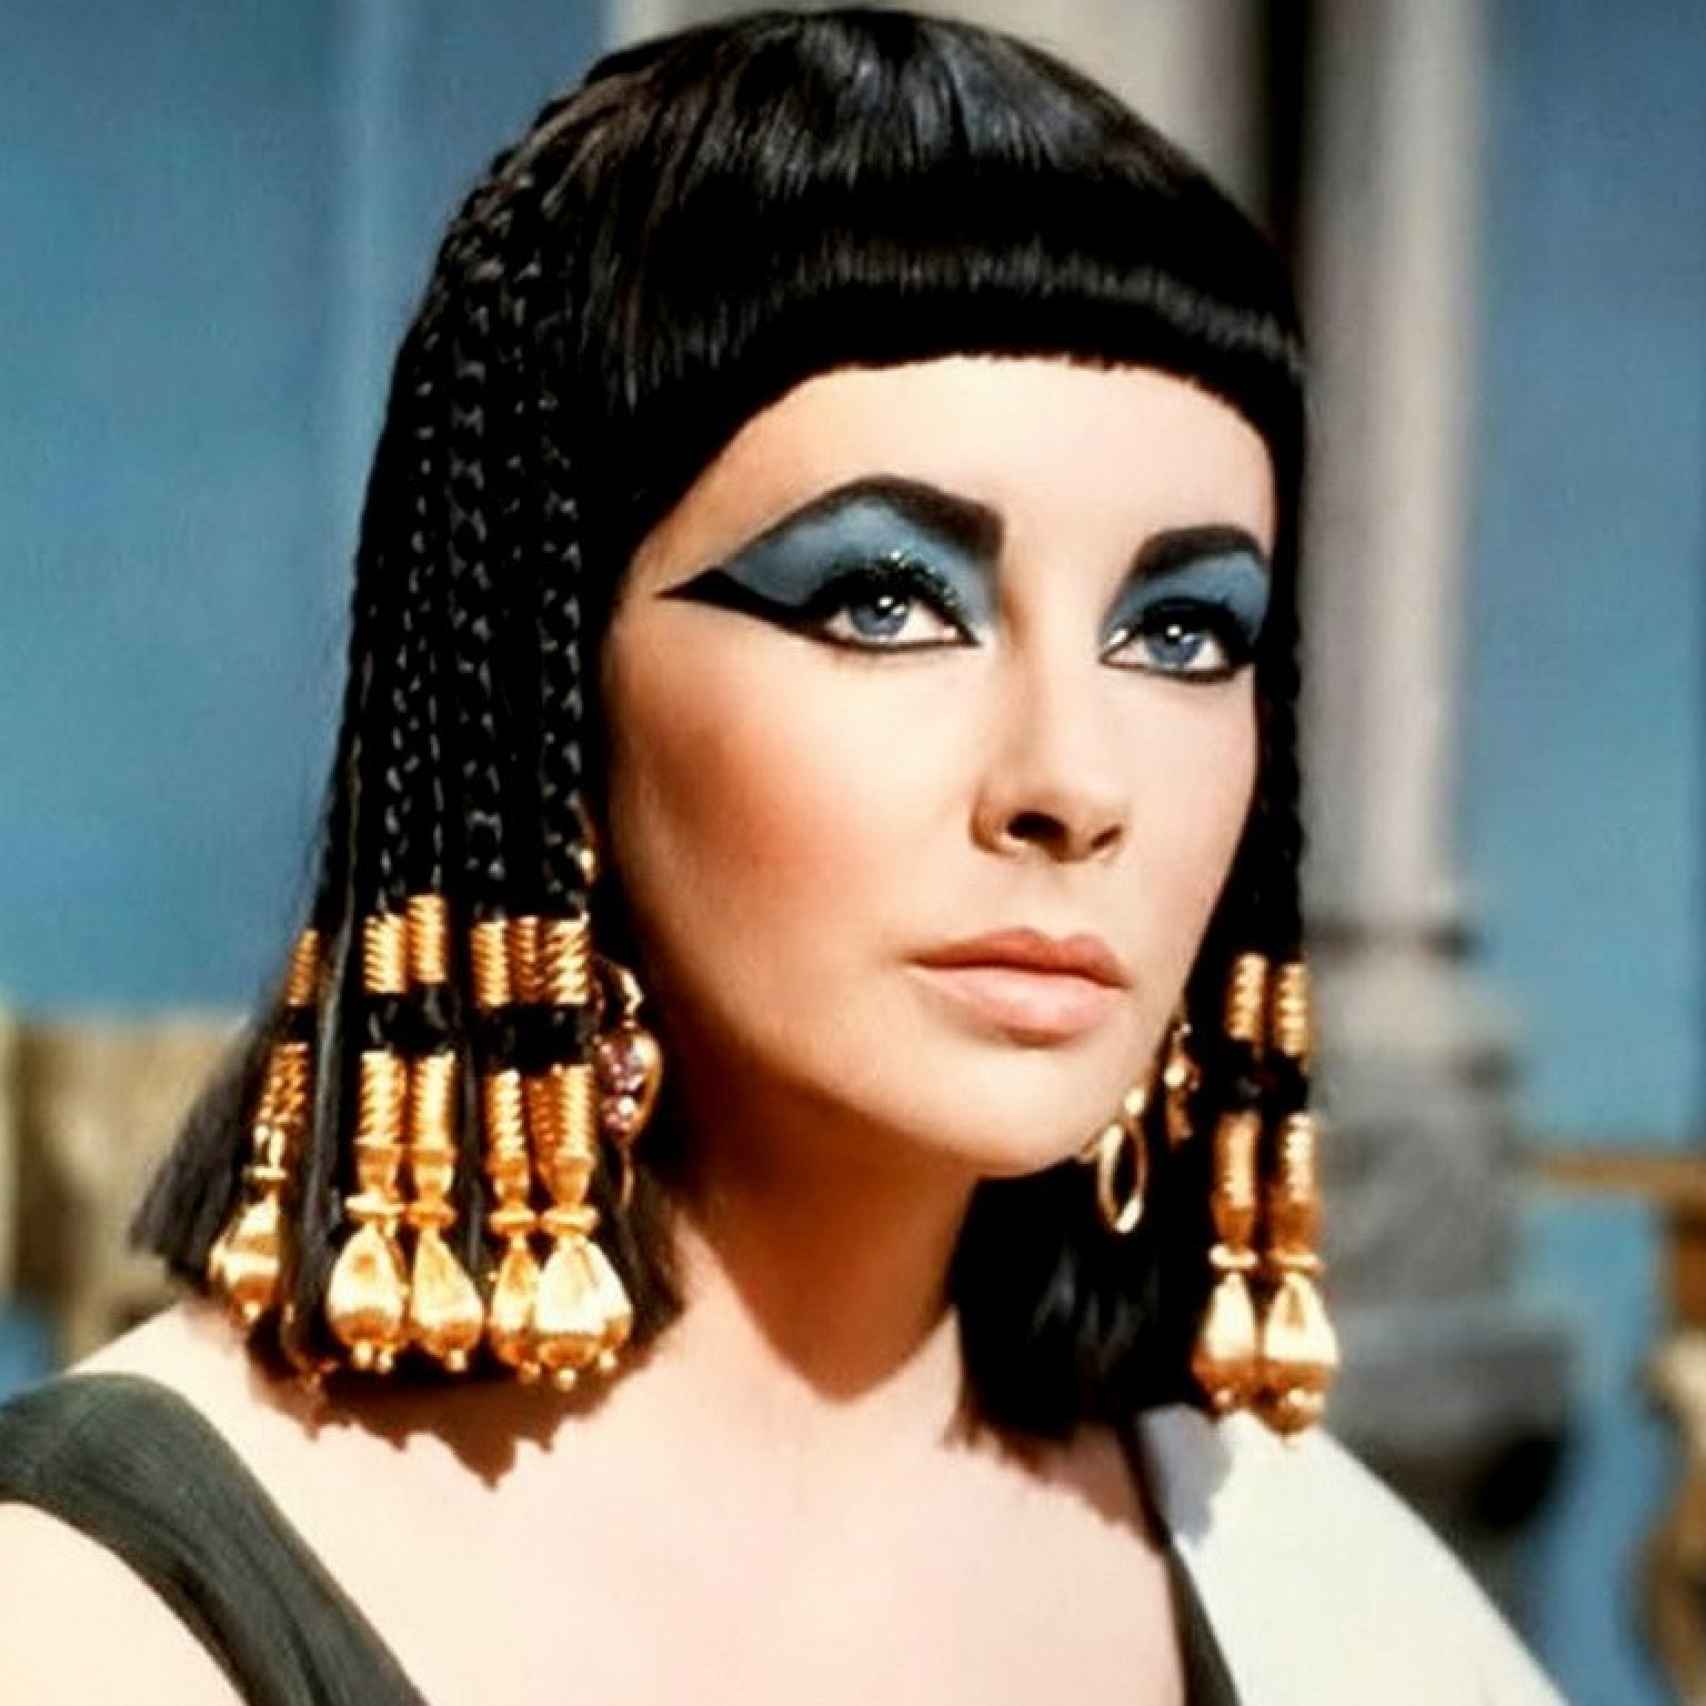 El personaje de Cleopatra, que interpretó Elizabeth Taylor en 1963, puso de moda el eye-liner.